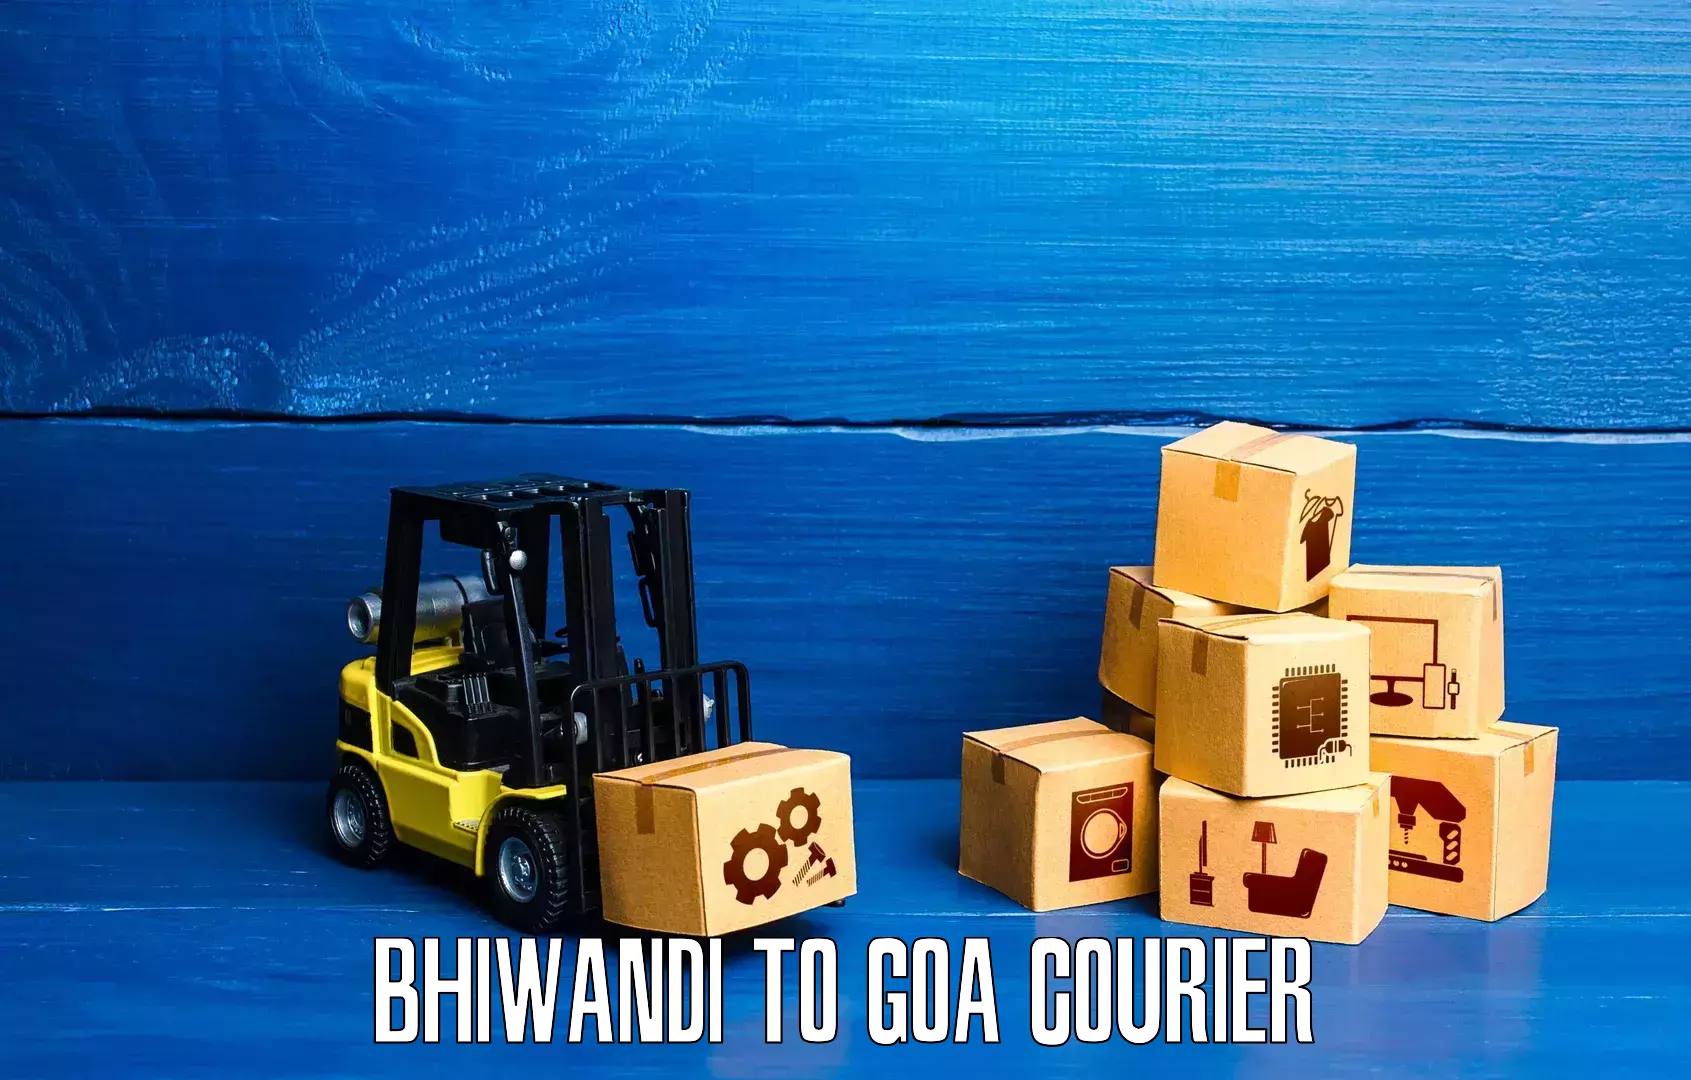 Seamless shipping service Bhiwandi to IIT Goa